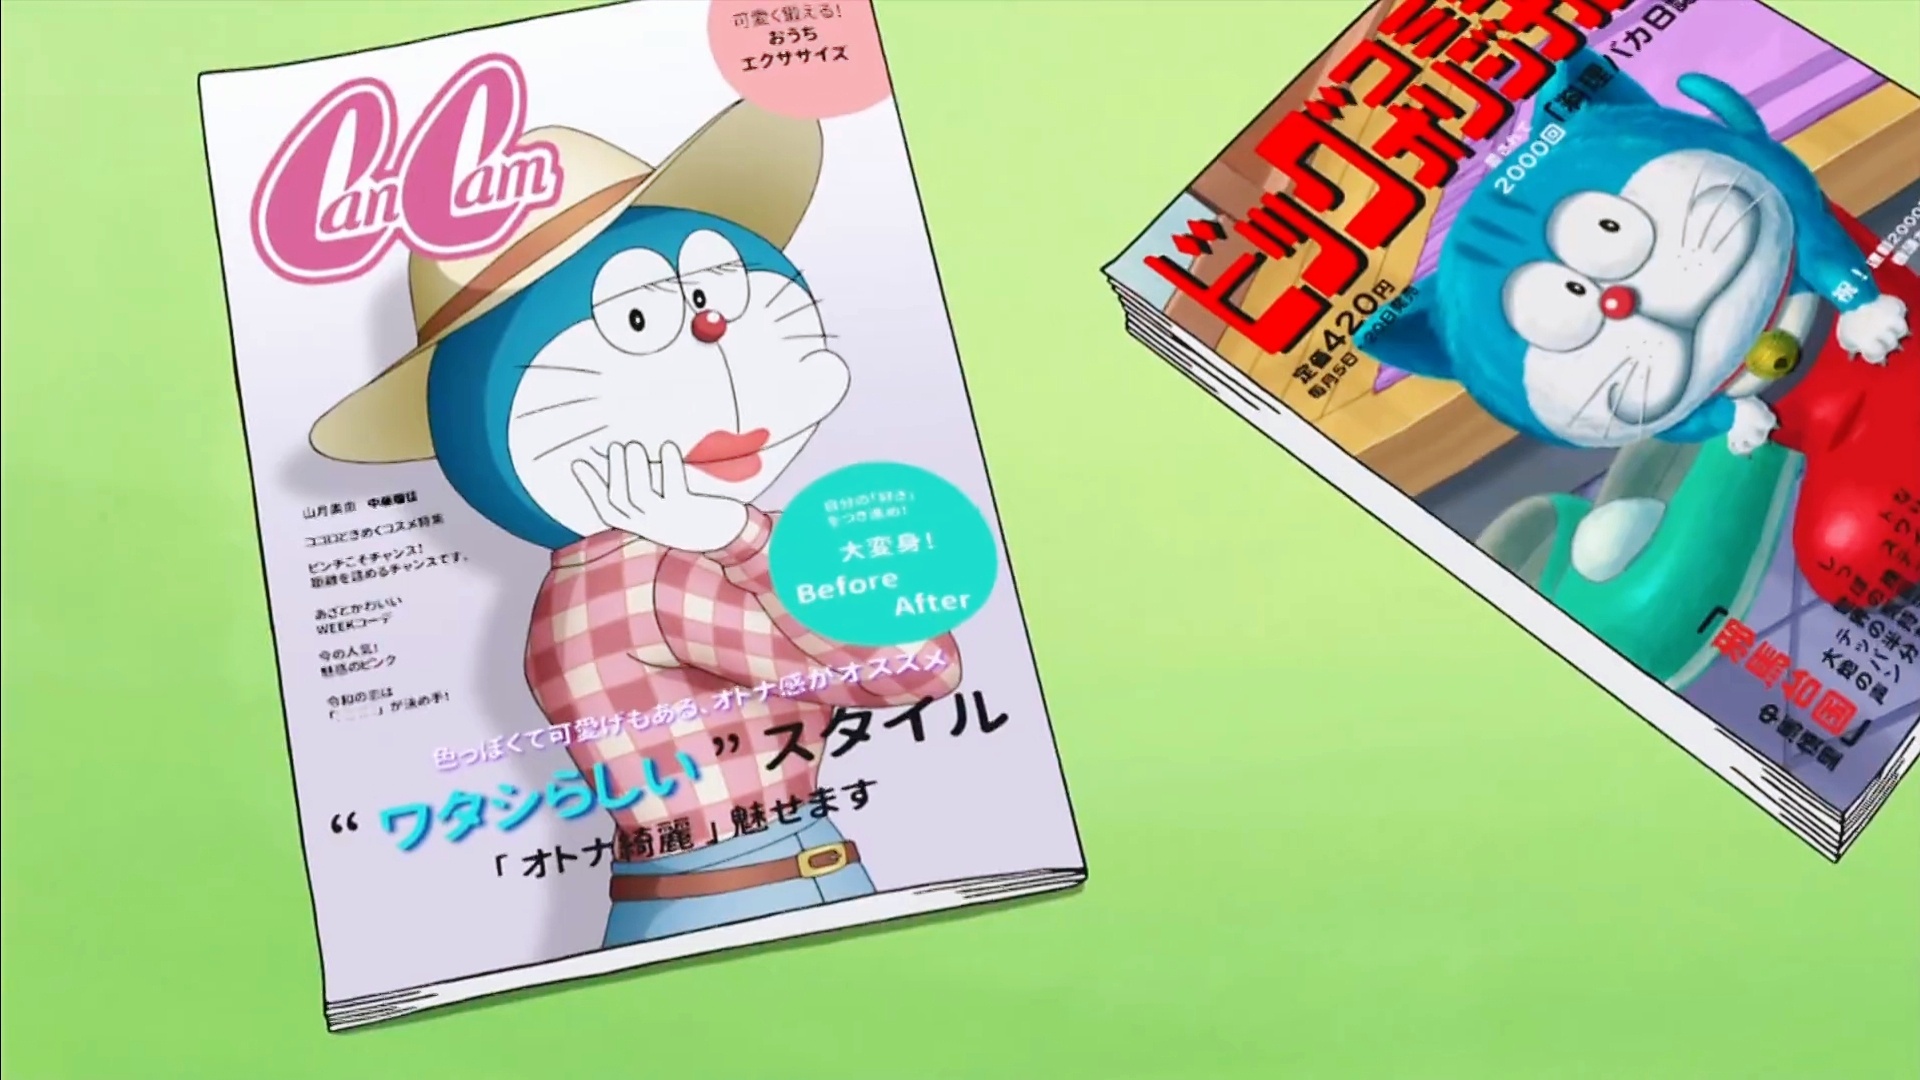 Sốc với loạt ảnh Doraemon chuyển giới thành mỹ nhân sexy, khoe chân dài tới nách nuột nà như siêu mẫu quốc tế! - Ảnh 6.